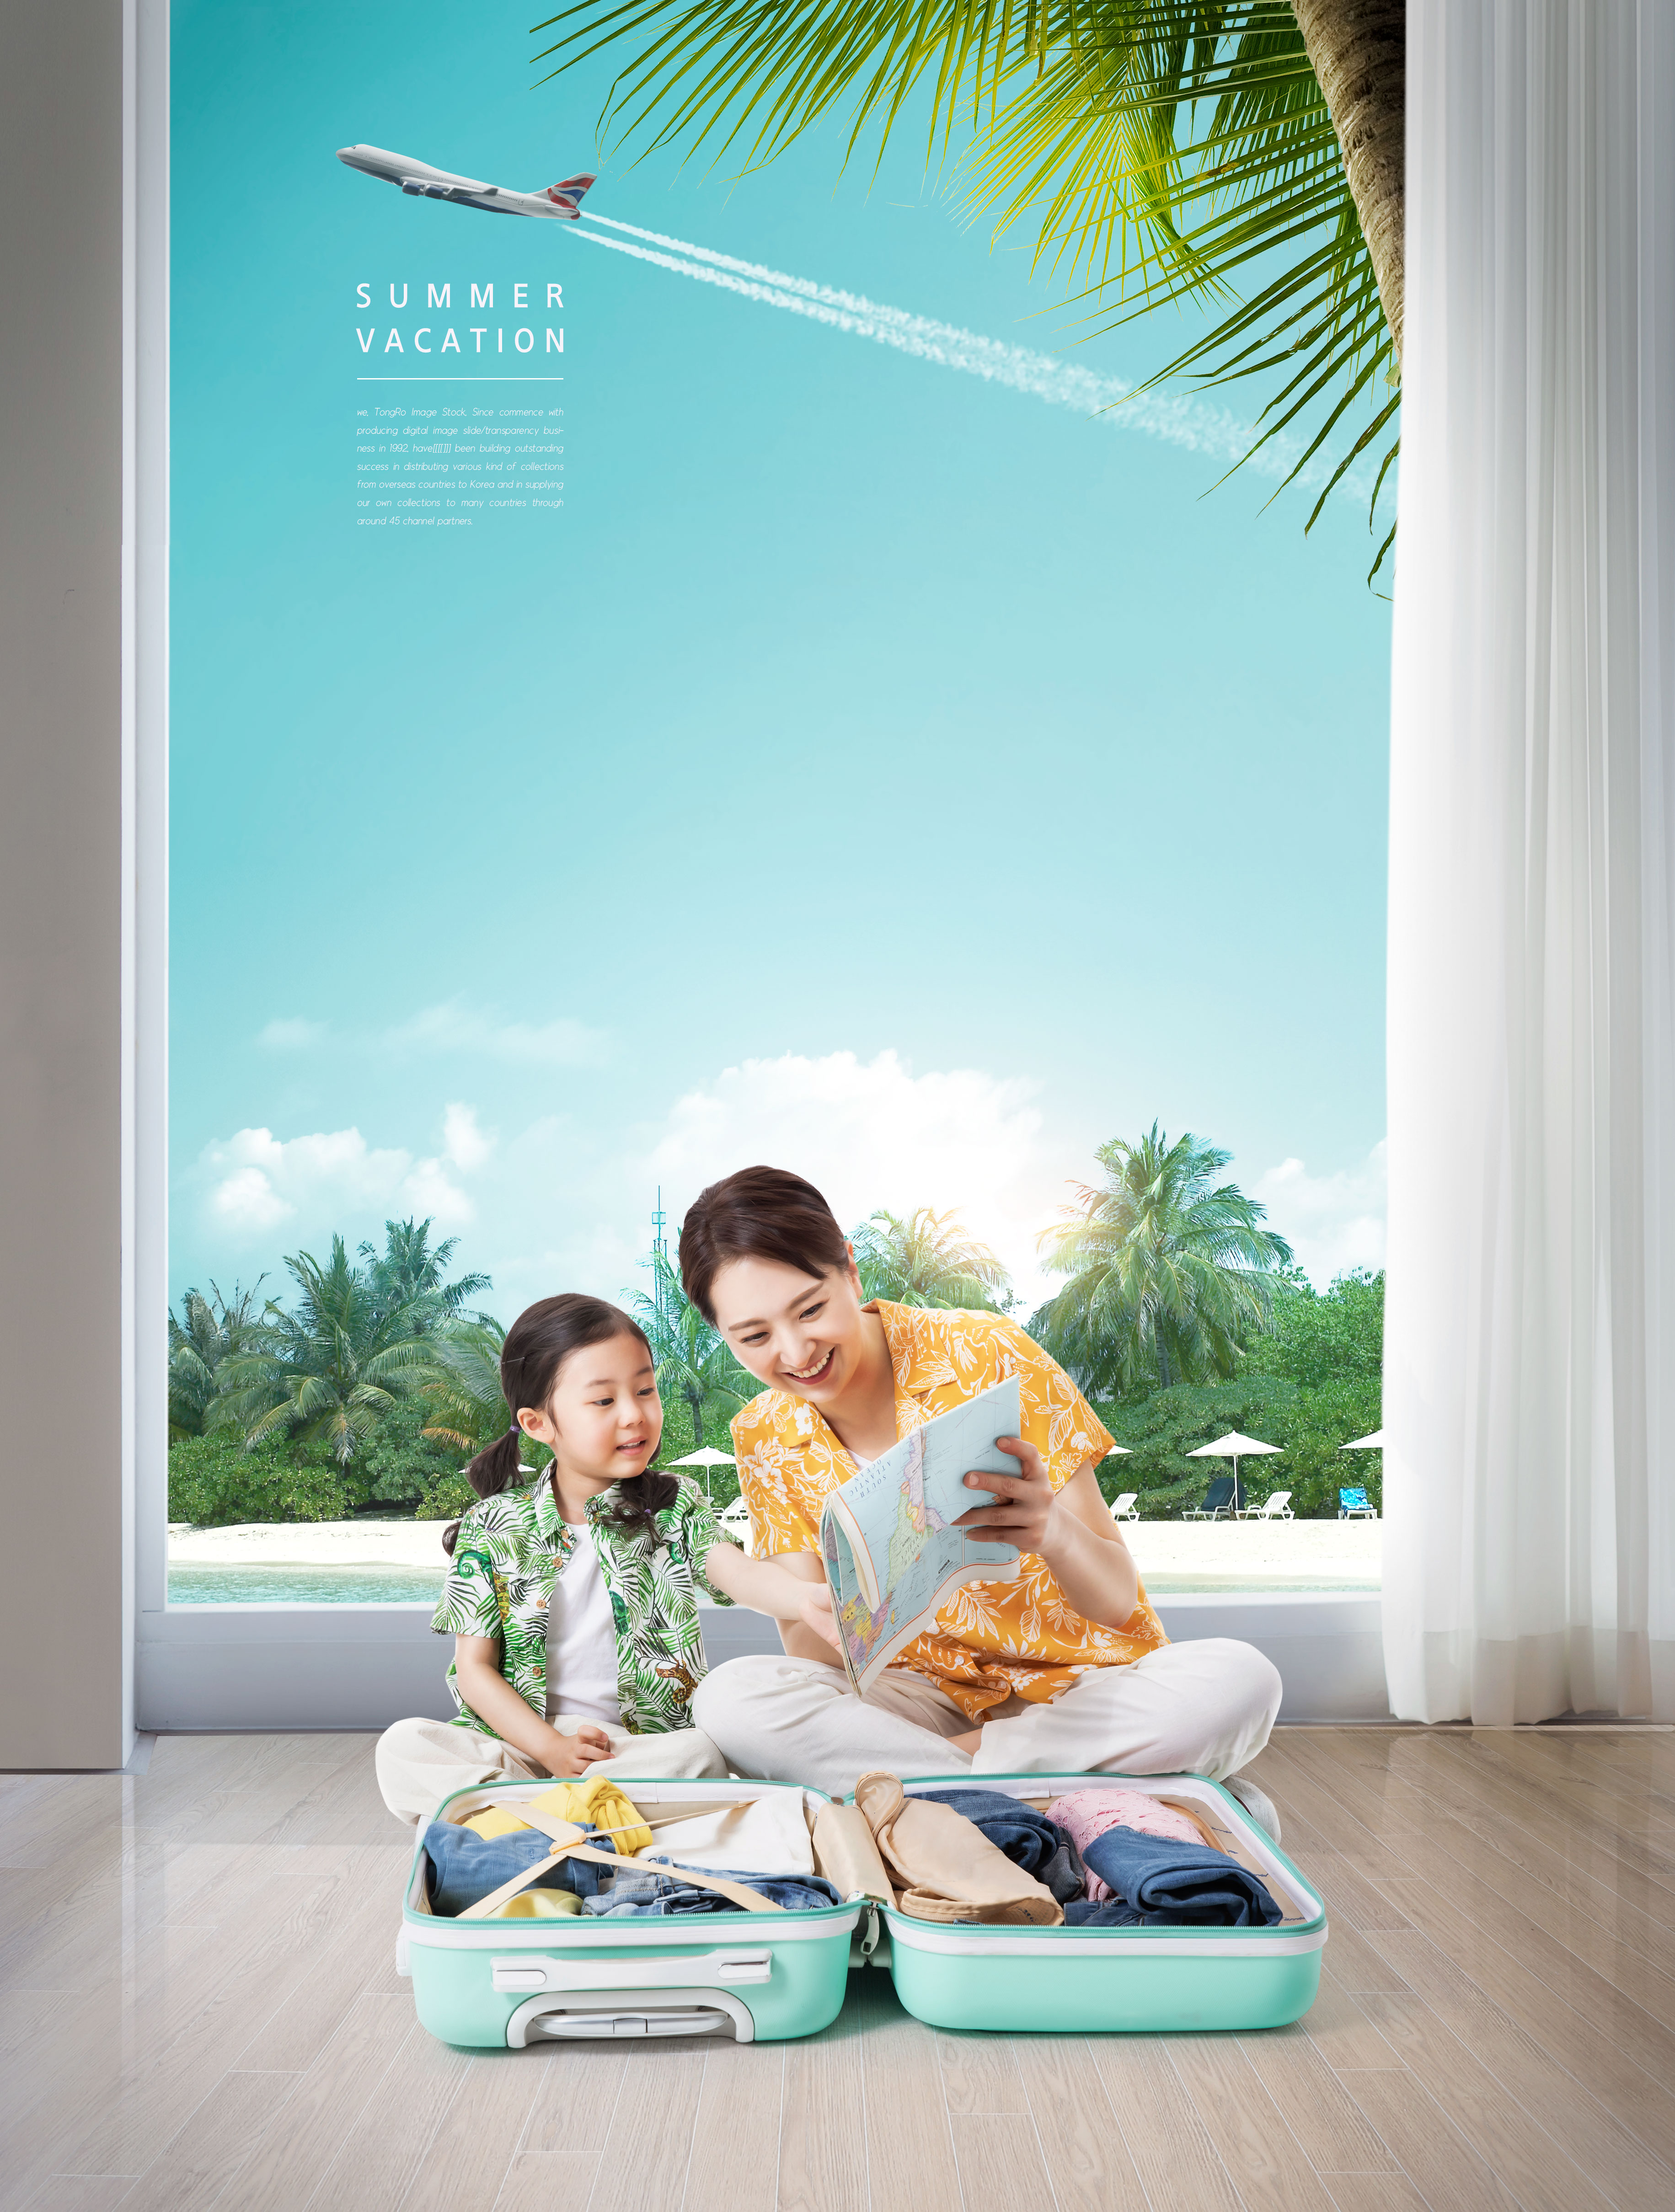 夏季暑假家庭旅行活动宣传海报套装[PSD]插图(1)